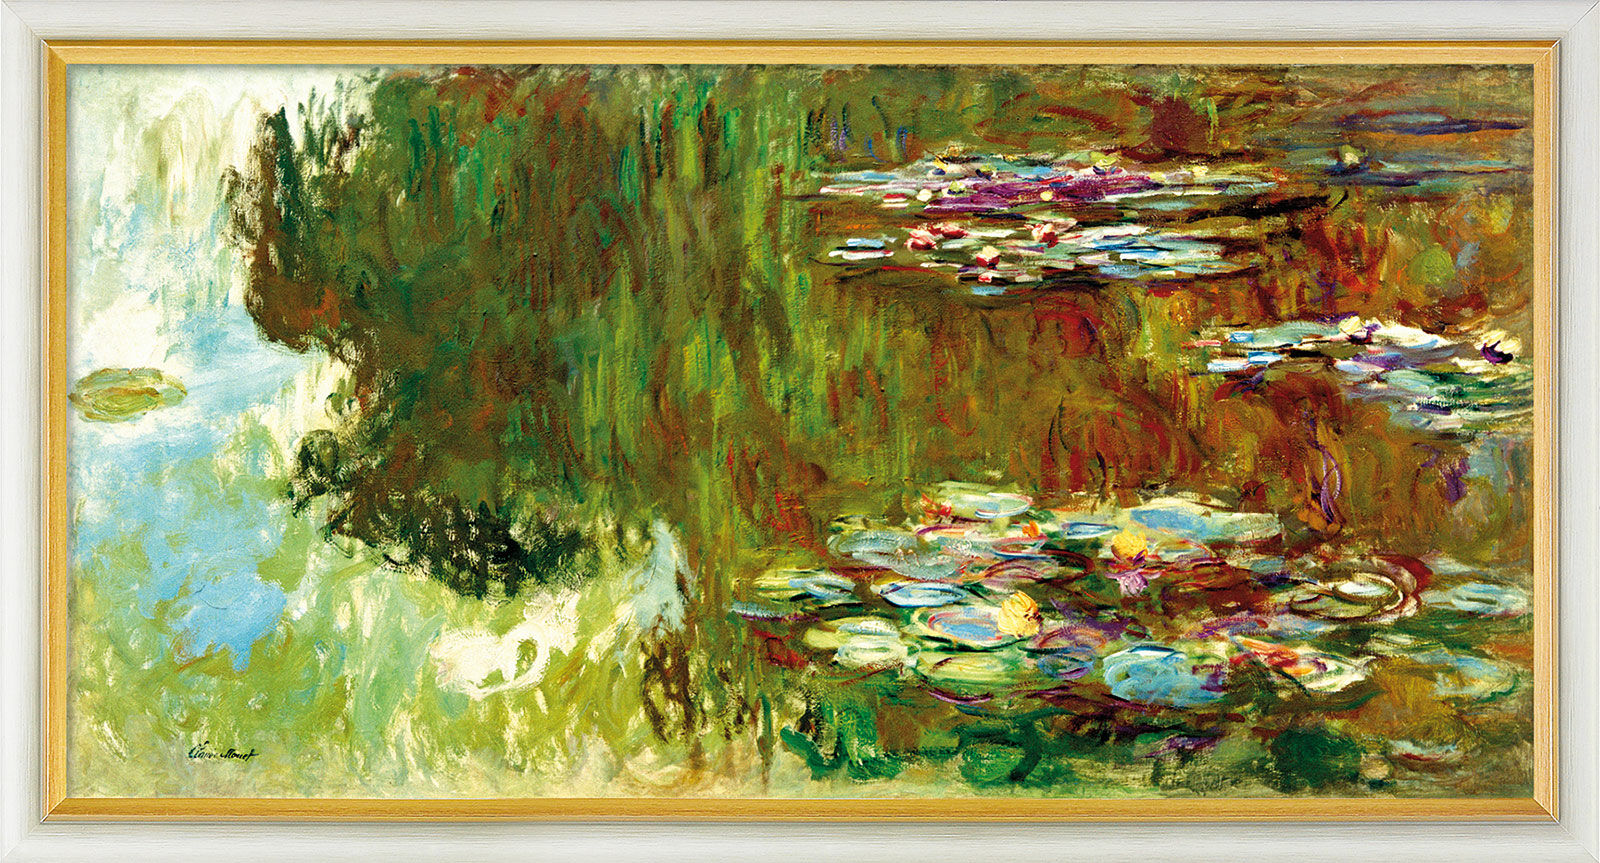 Tableau "Le bassin aux nymphéas" (1917-1919), encadré von Claude Monet